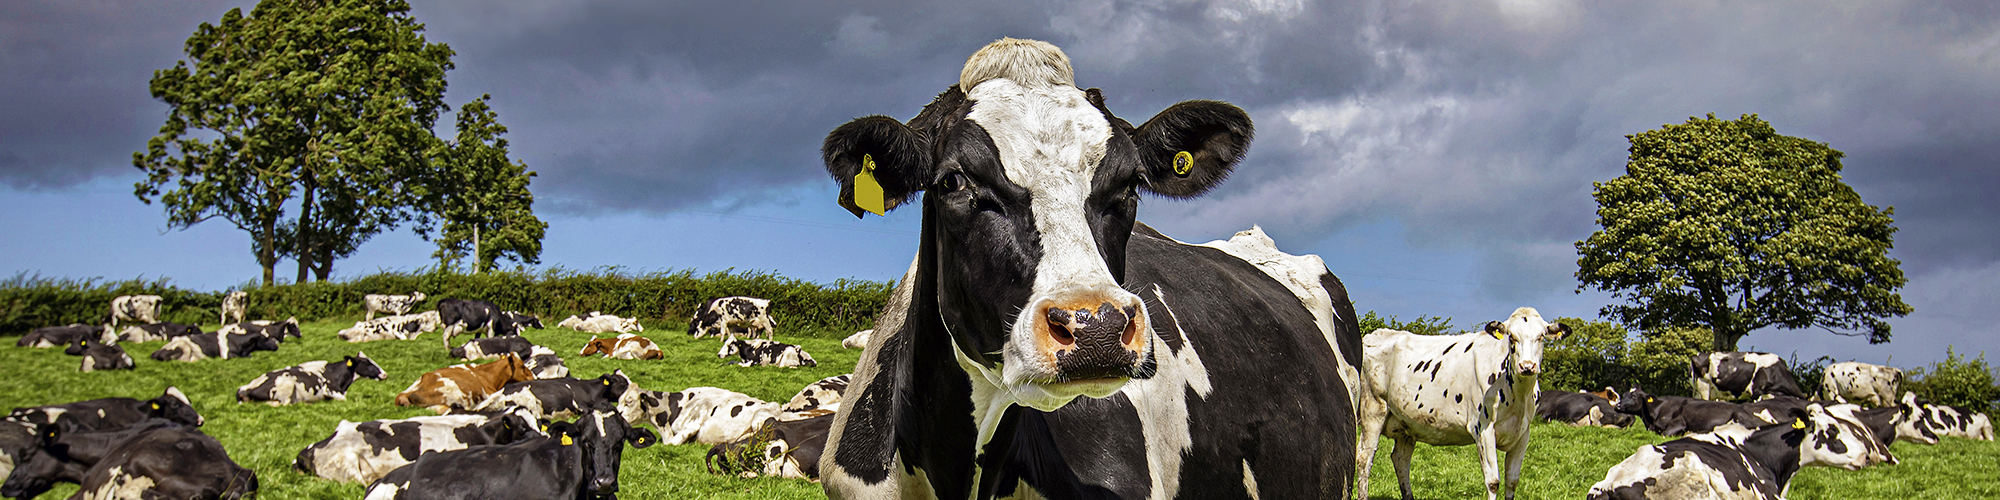 Image d'un prés occupé par des vache, avec en gros plan l'une d'entre elles